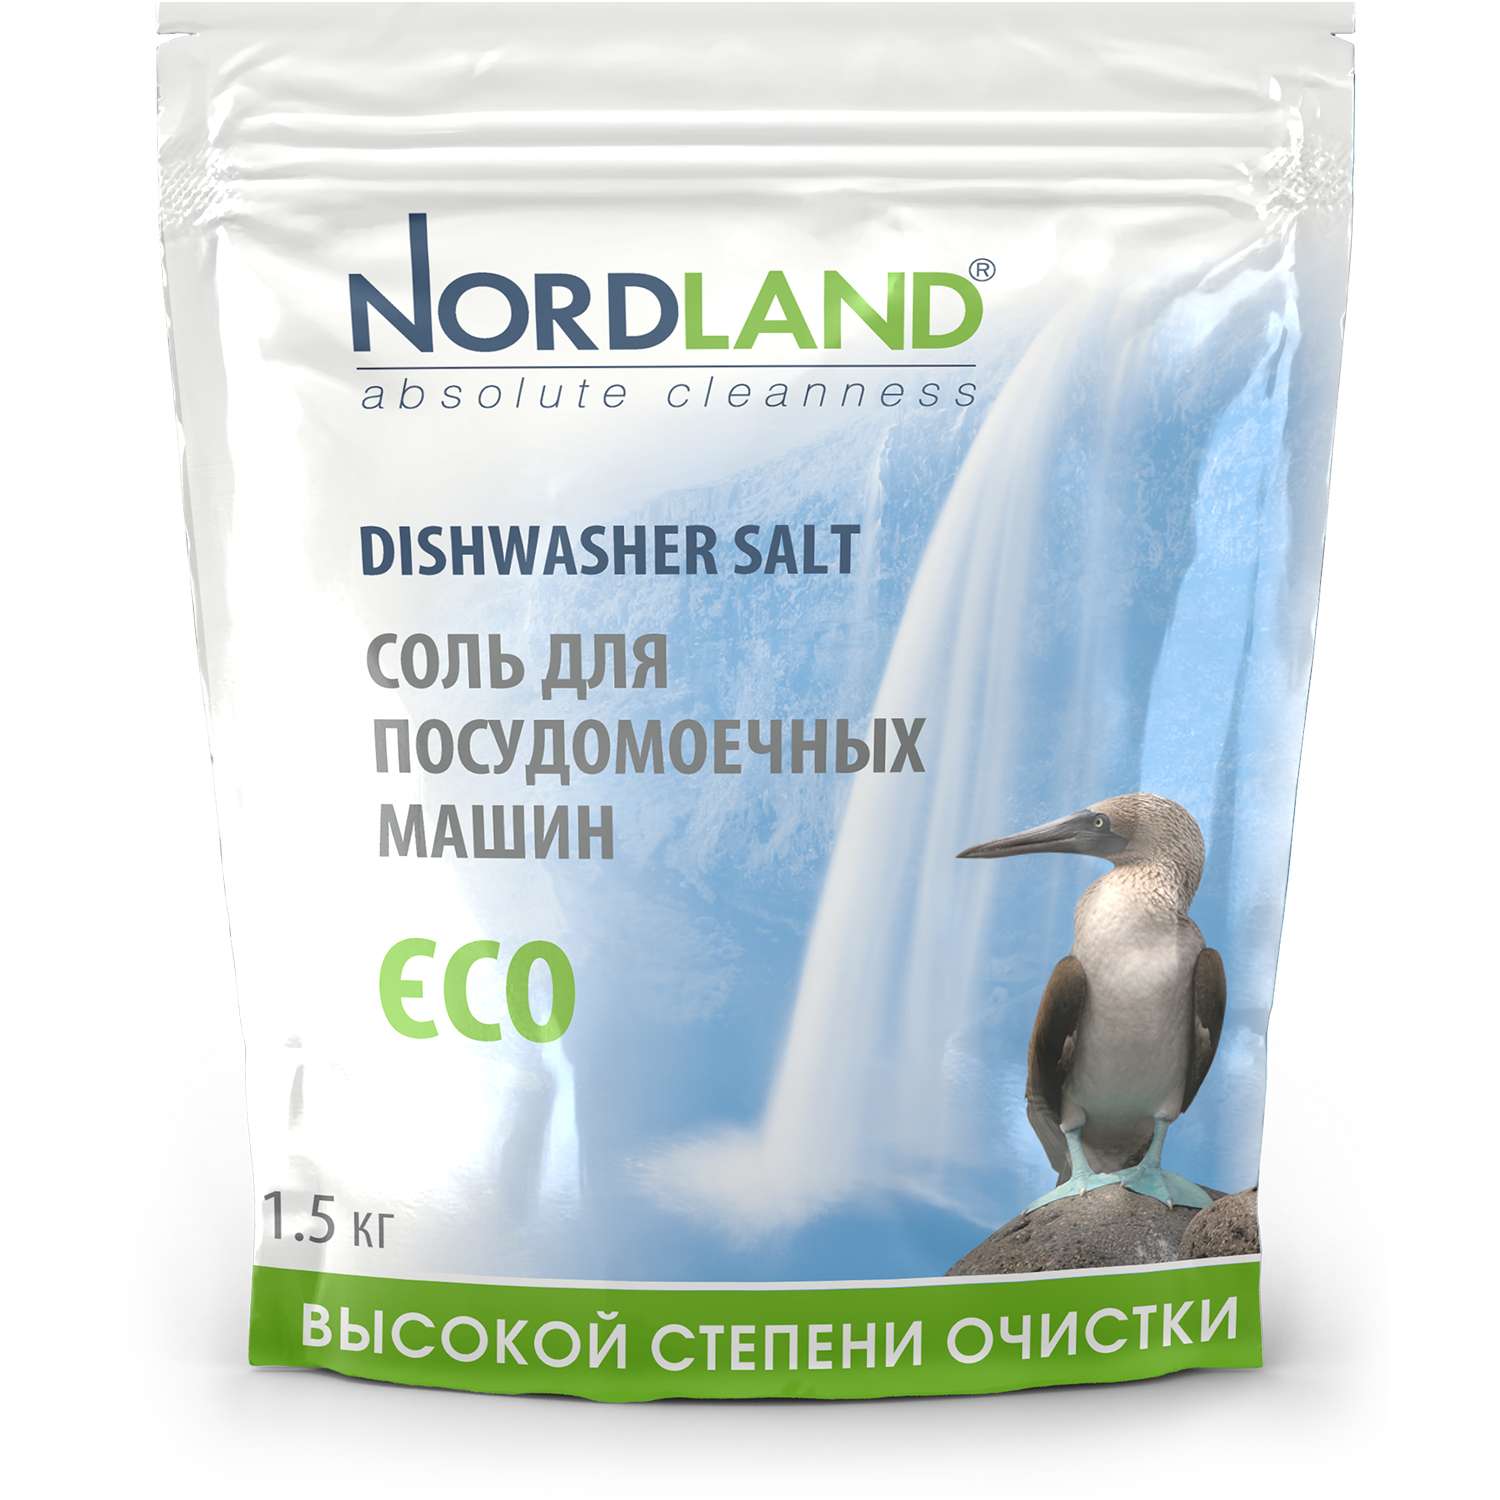 Соль Nordland для посудомоечных машин - фото 2